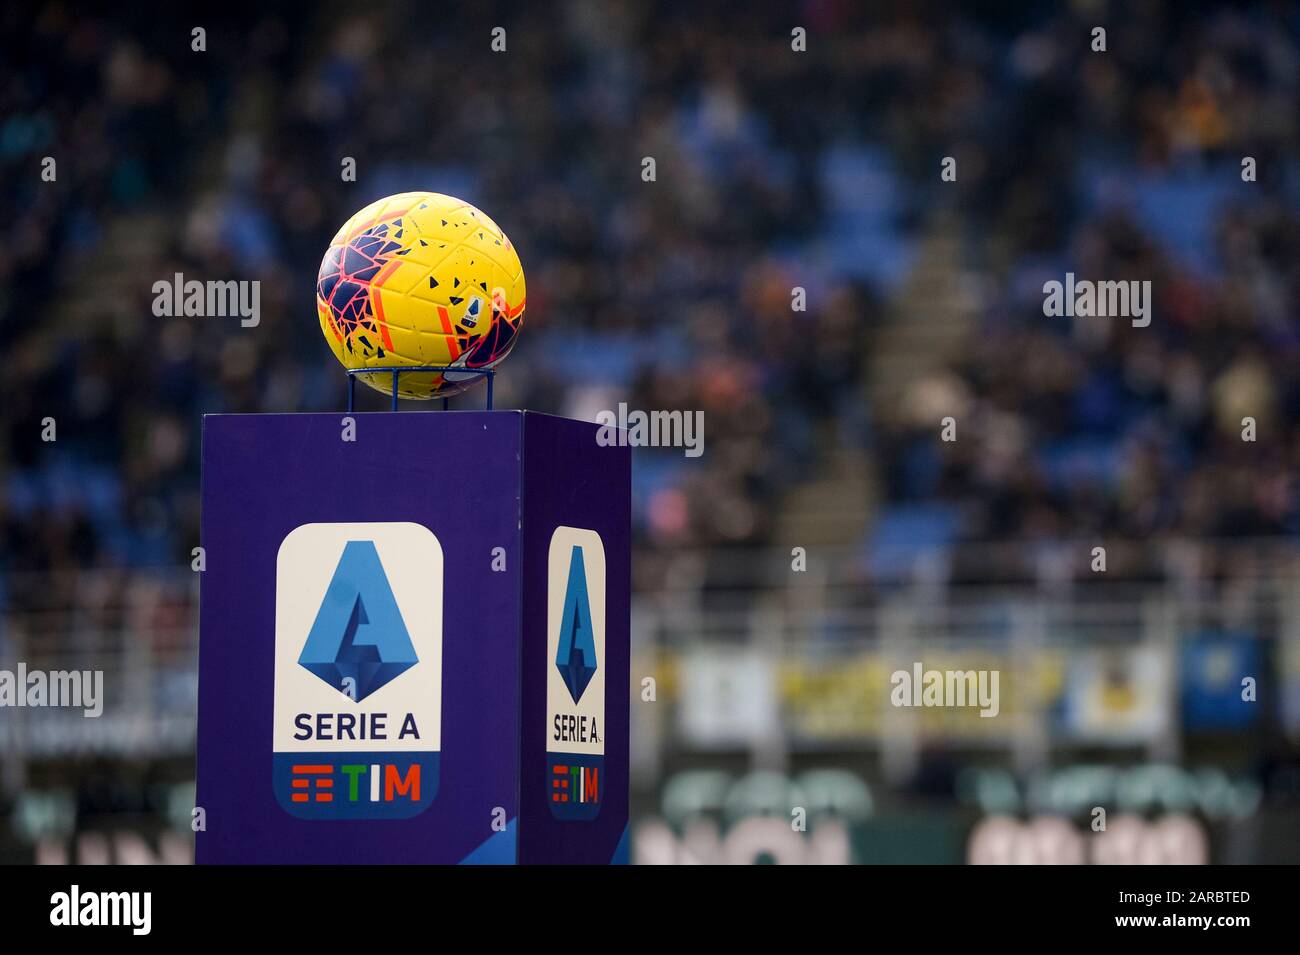 Mailand, Italien - 26. Januar 2020: Der offizielle Serie-A-Matchball Nike Merlin ist vor dem Serie-A-Fußballspiel zwischen dem FC Internazionale und Cagliari Calcio abgebildet. Die Partie endete mit einem 1:1-Unentschieden. Kredit: Nicolò Campo/Alamy Live News Stockfoto